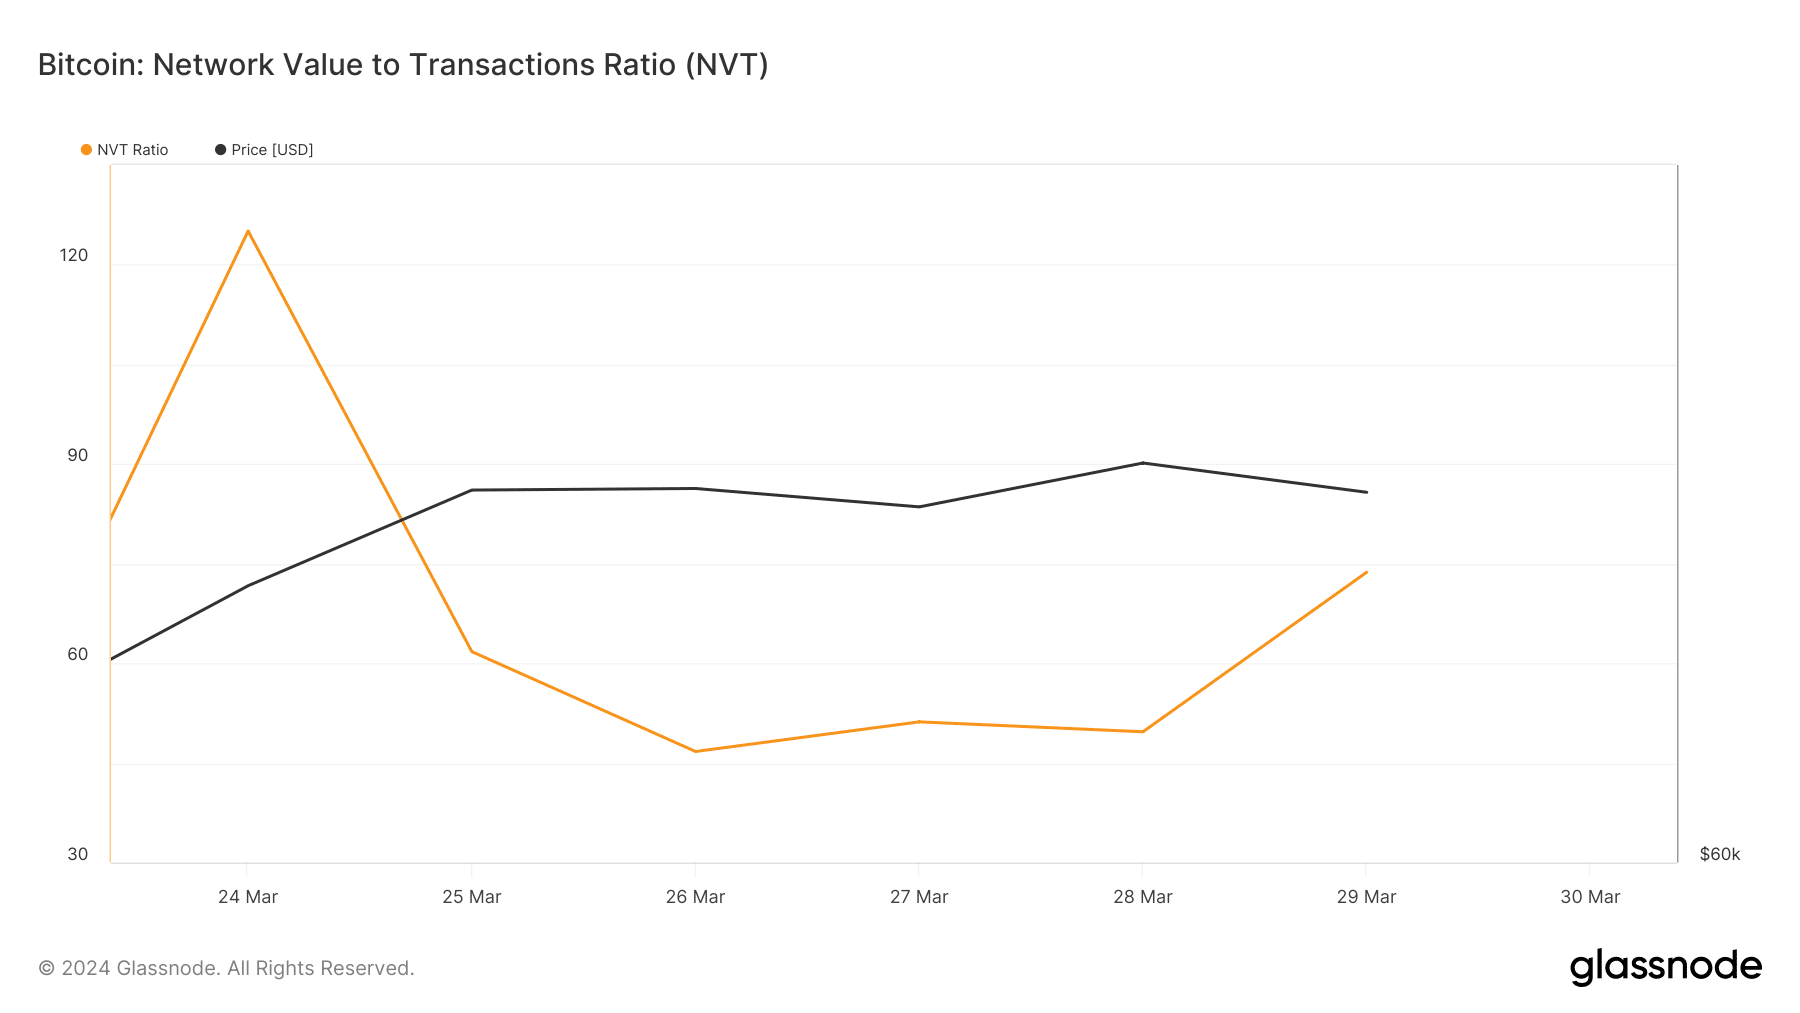 Bitcoin's NVT ratio has increased